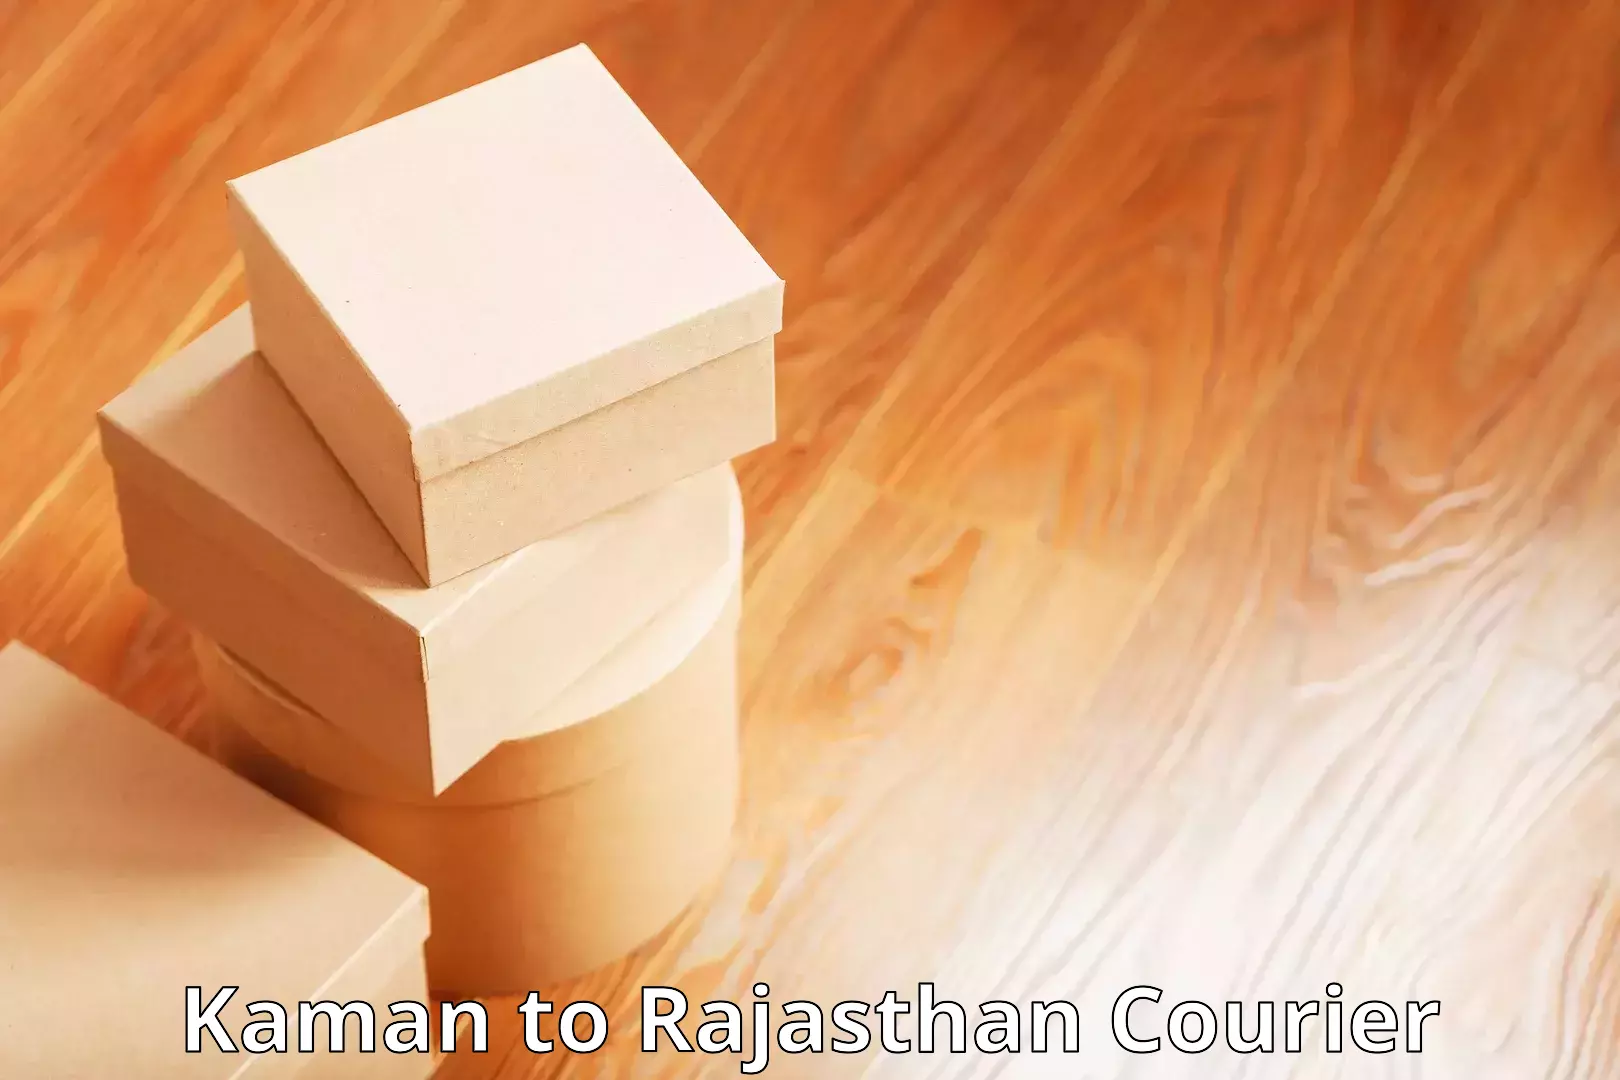 Reliable courier services Kaman to Bijainagar